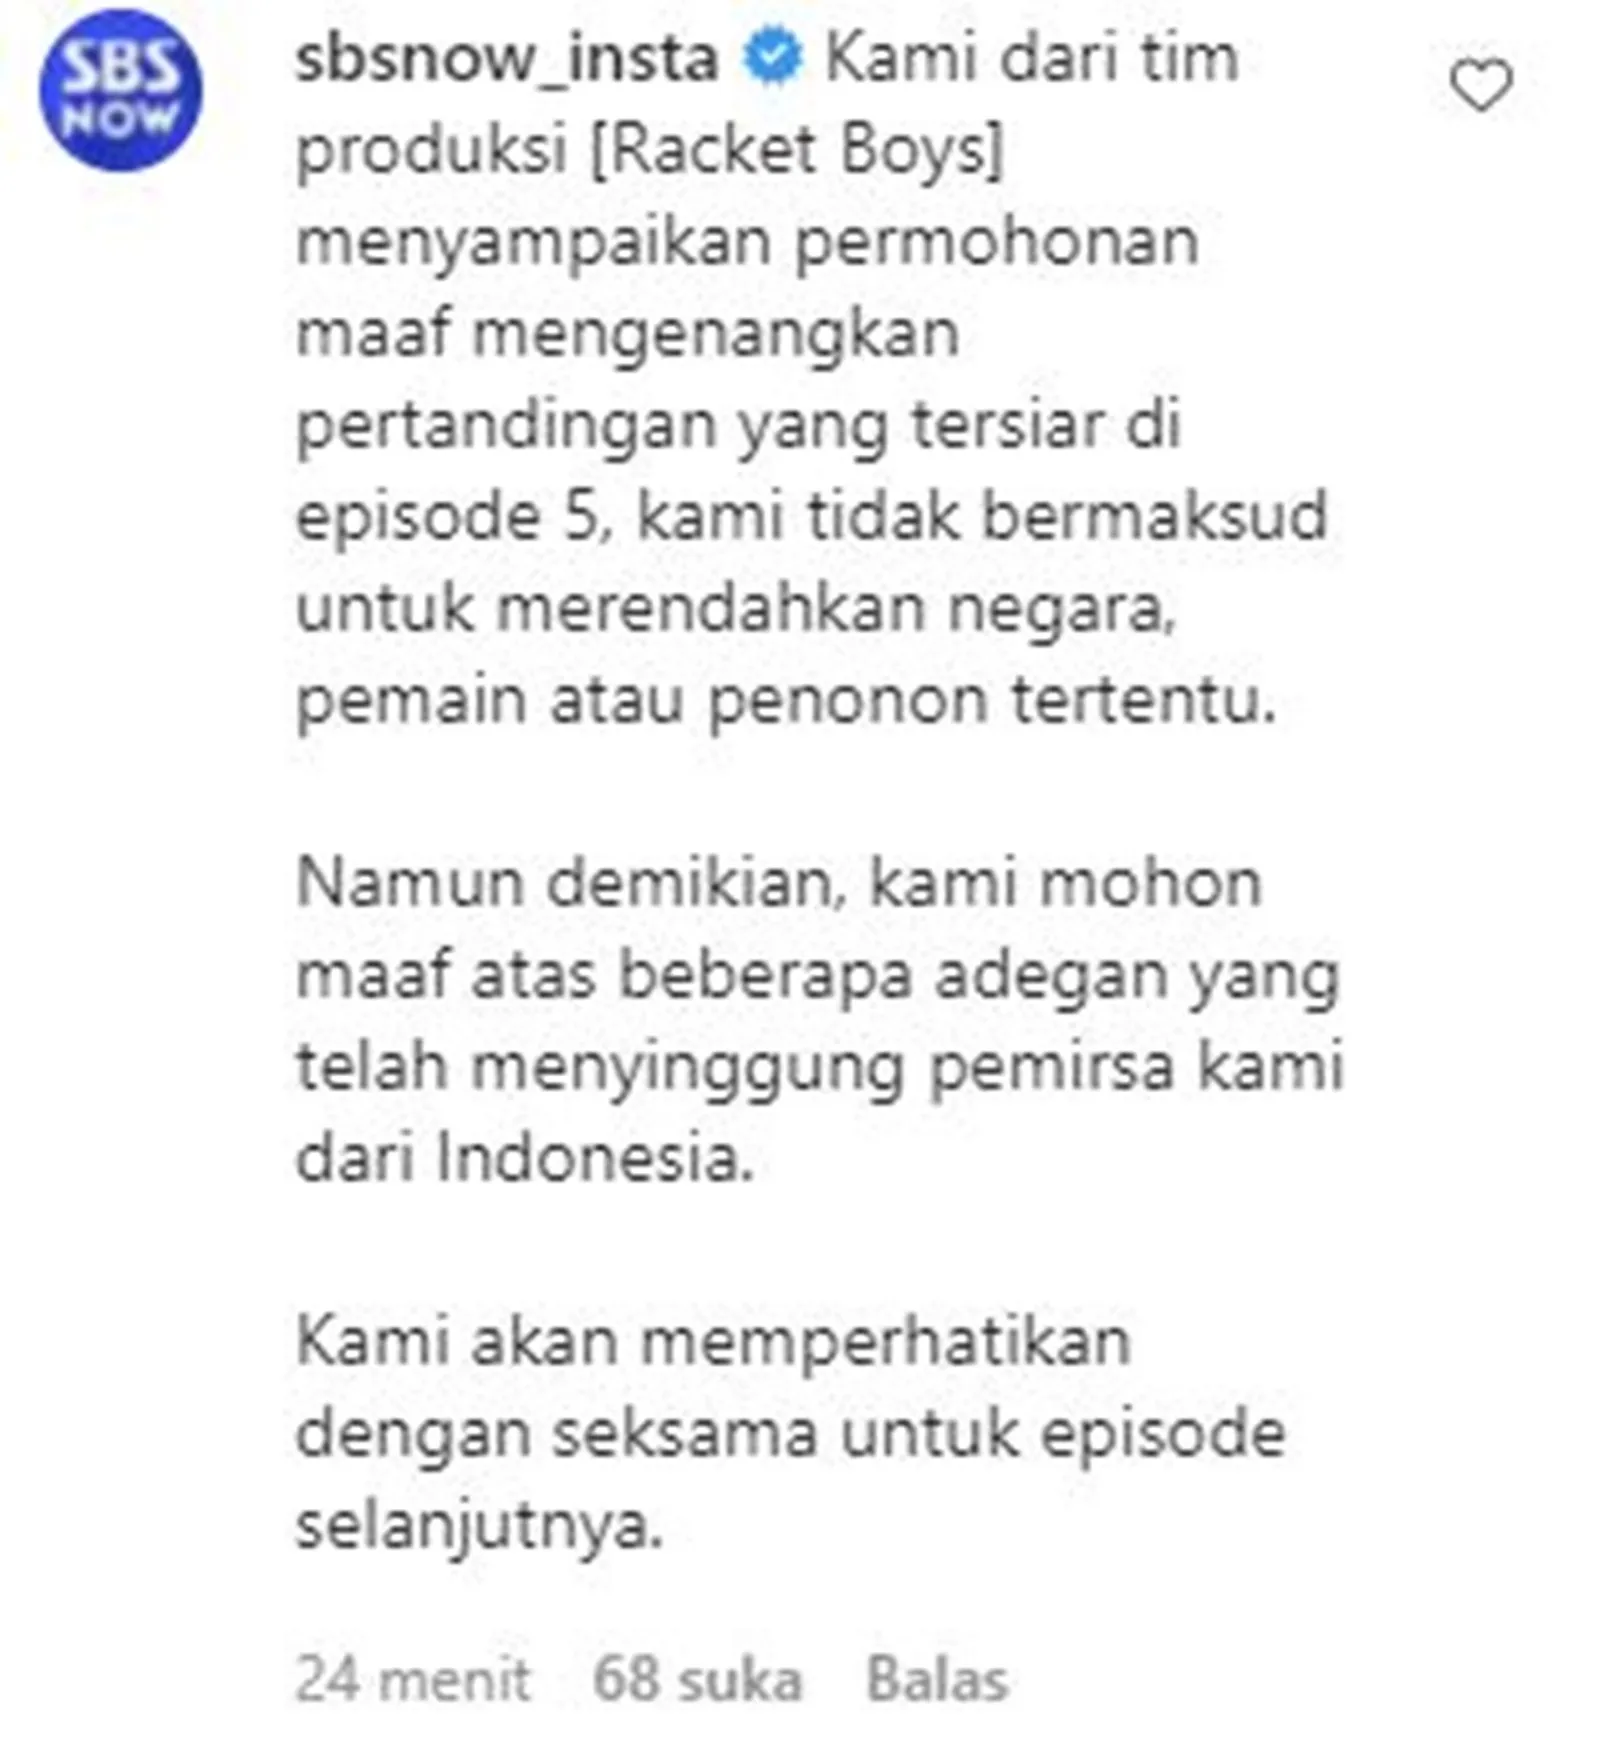 'Racket Boys' Hina Indonesia, Ini Klarifikasi Tim Produksi ke Warganet